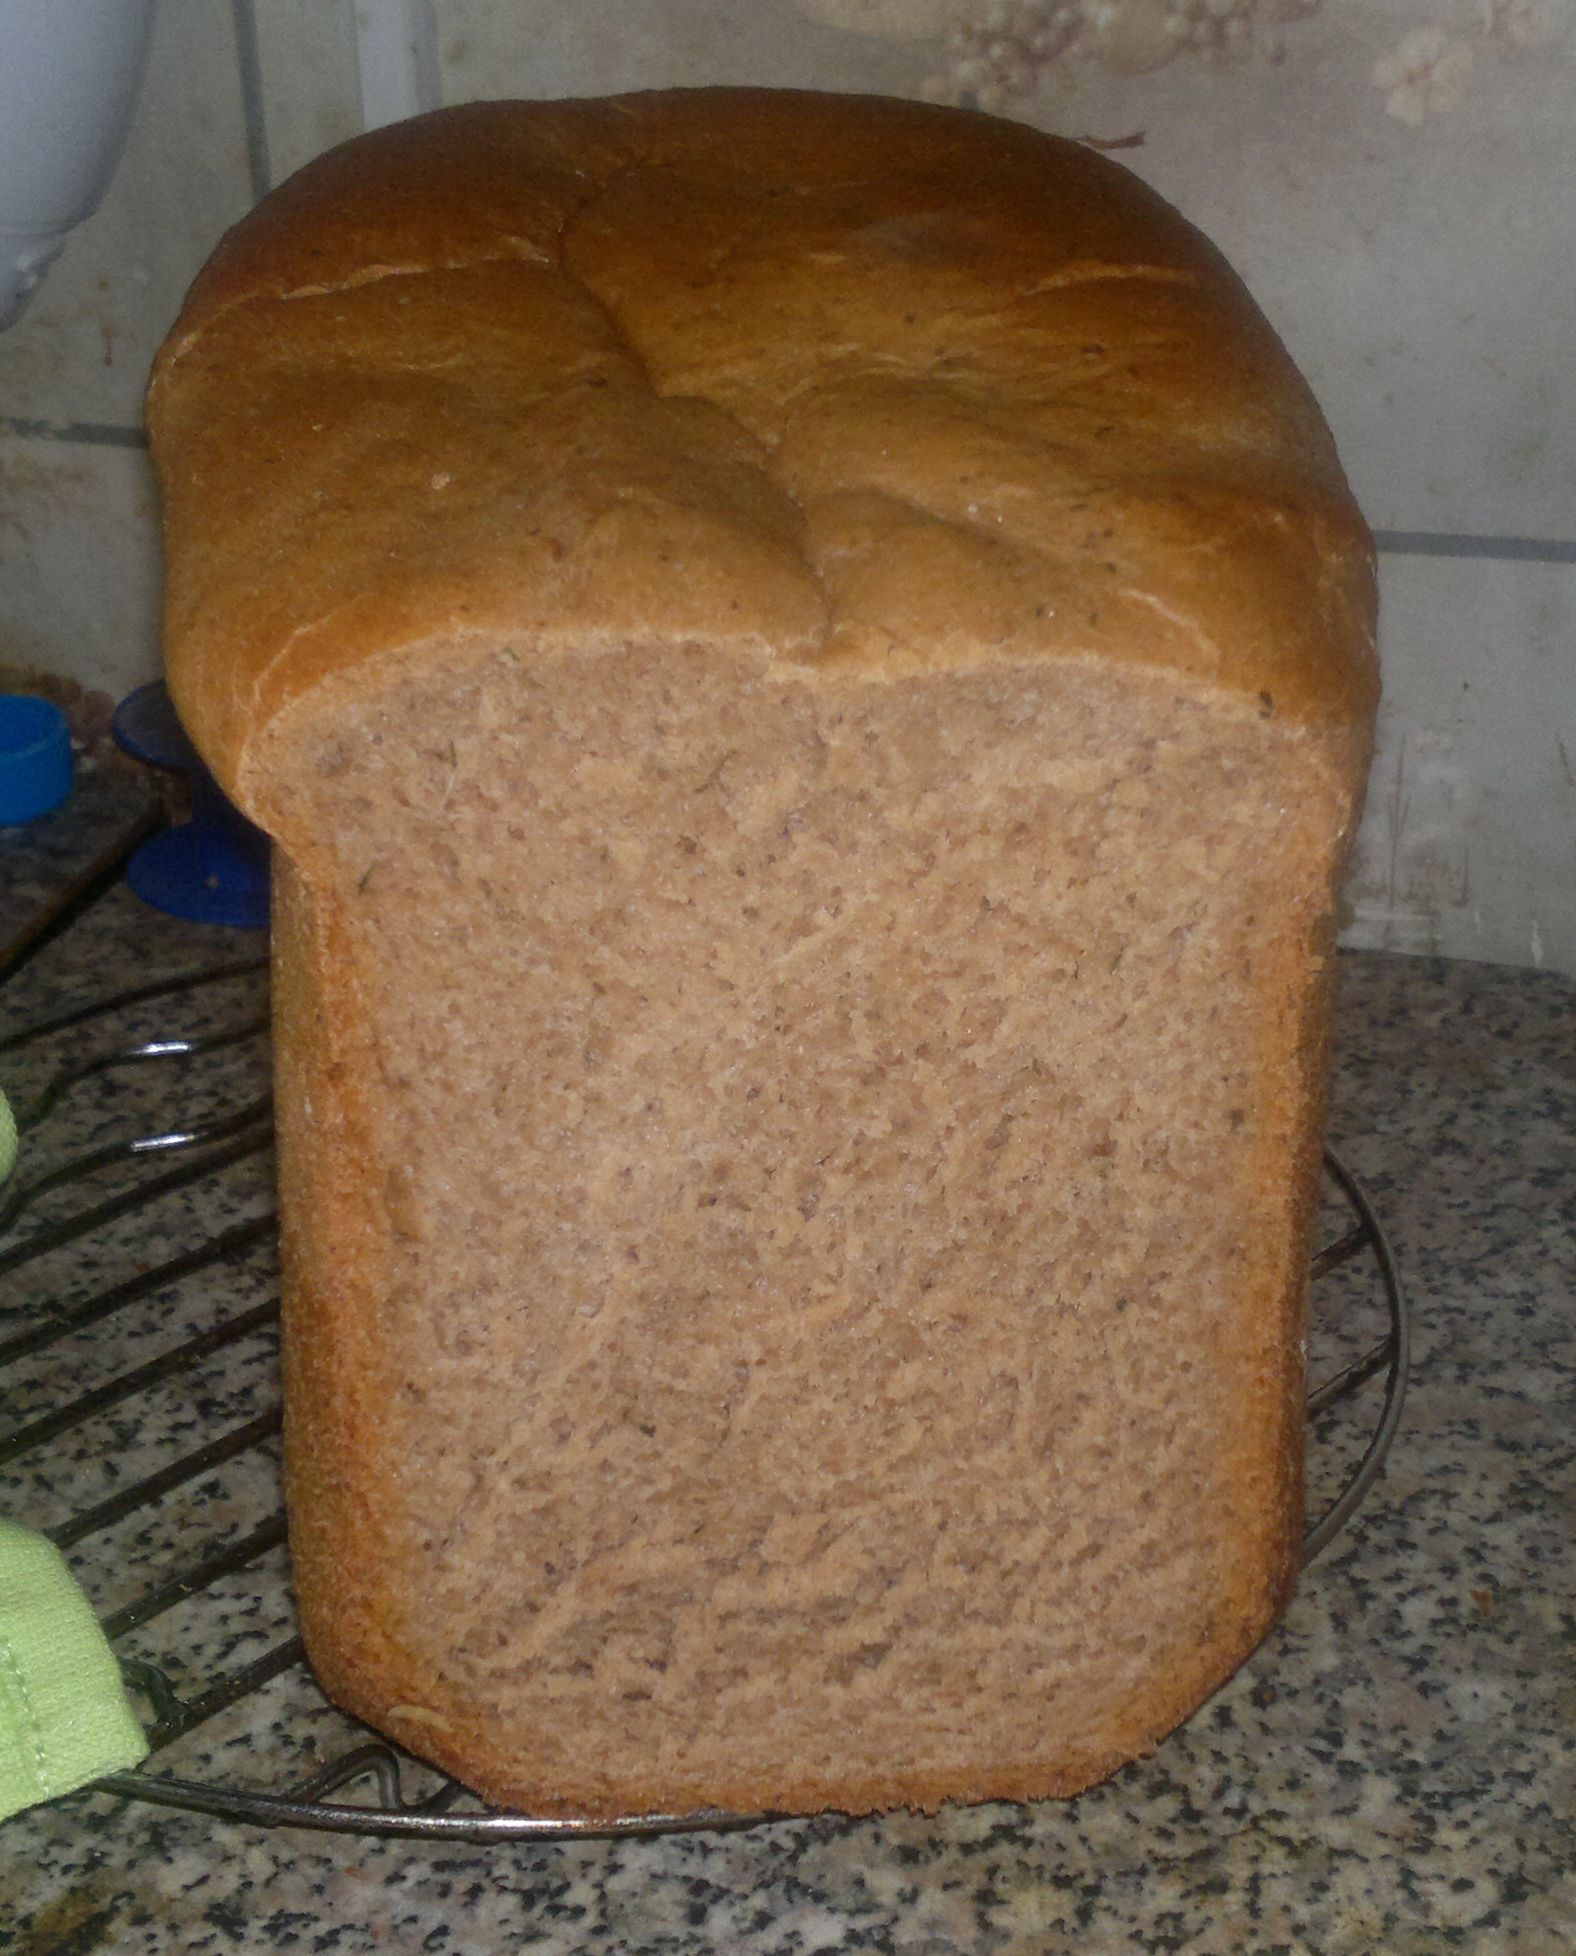 Zwart brood met rode peper (broodbakmachine)